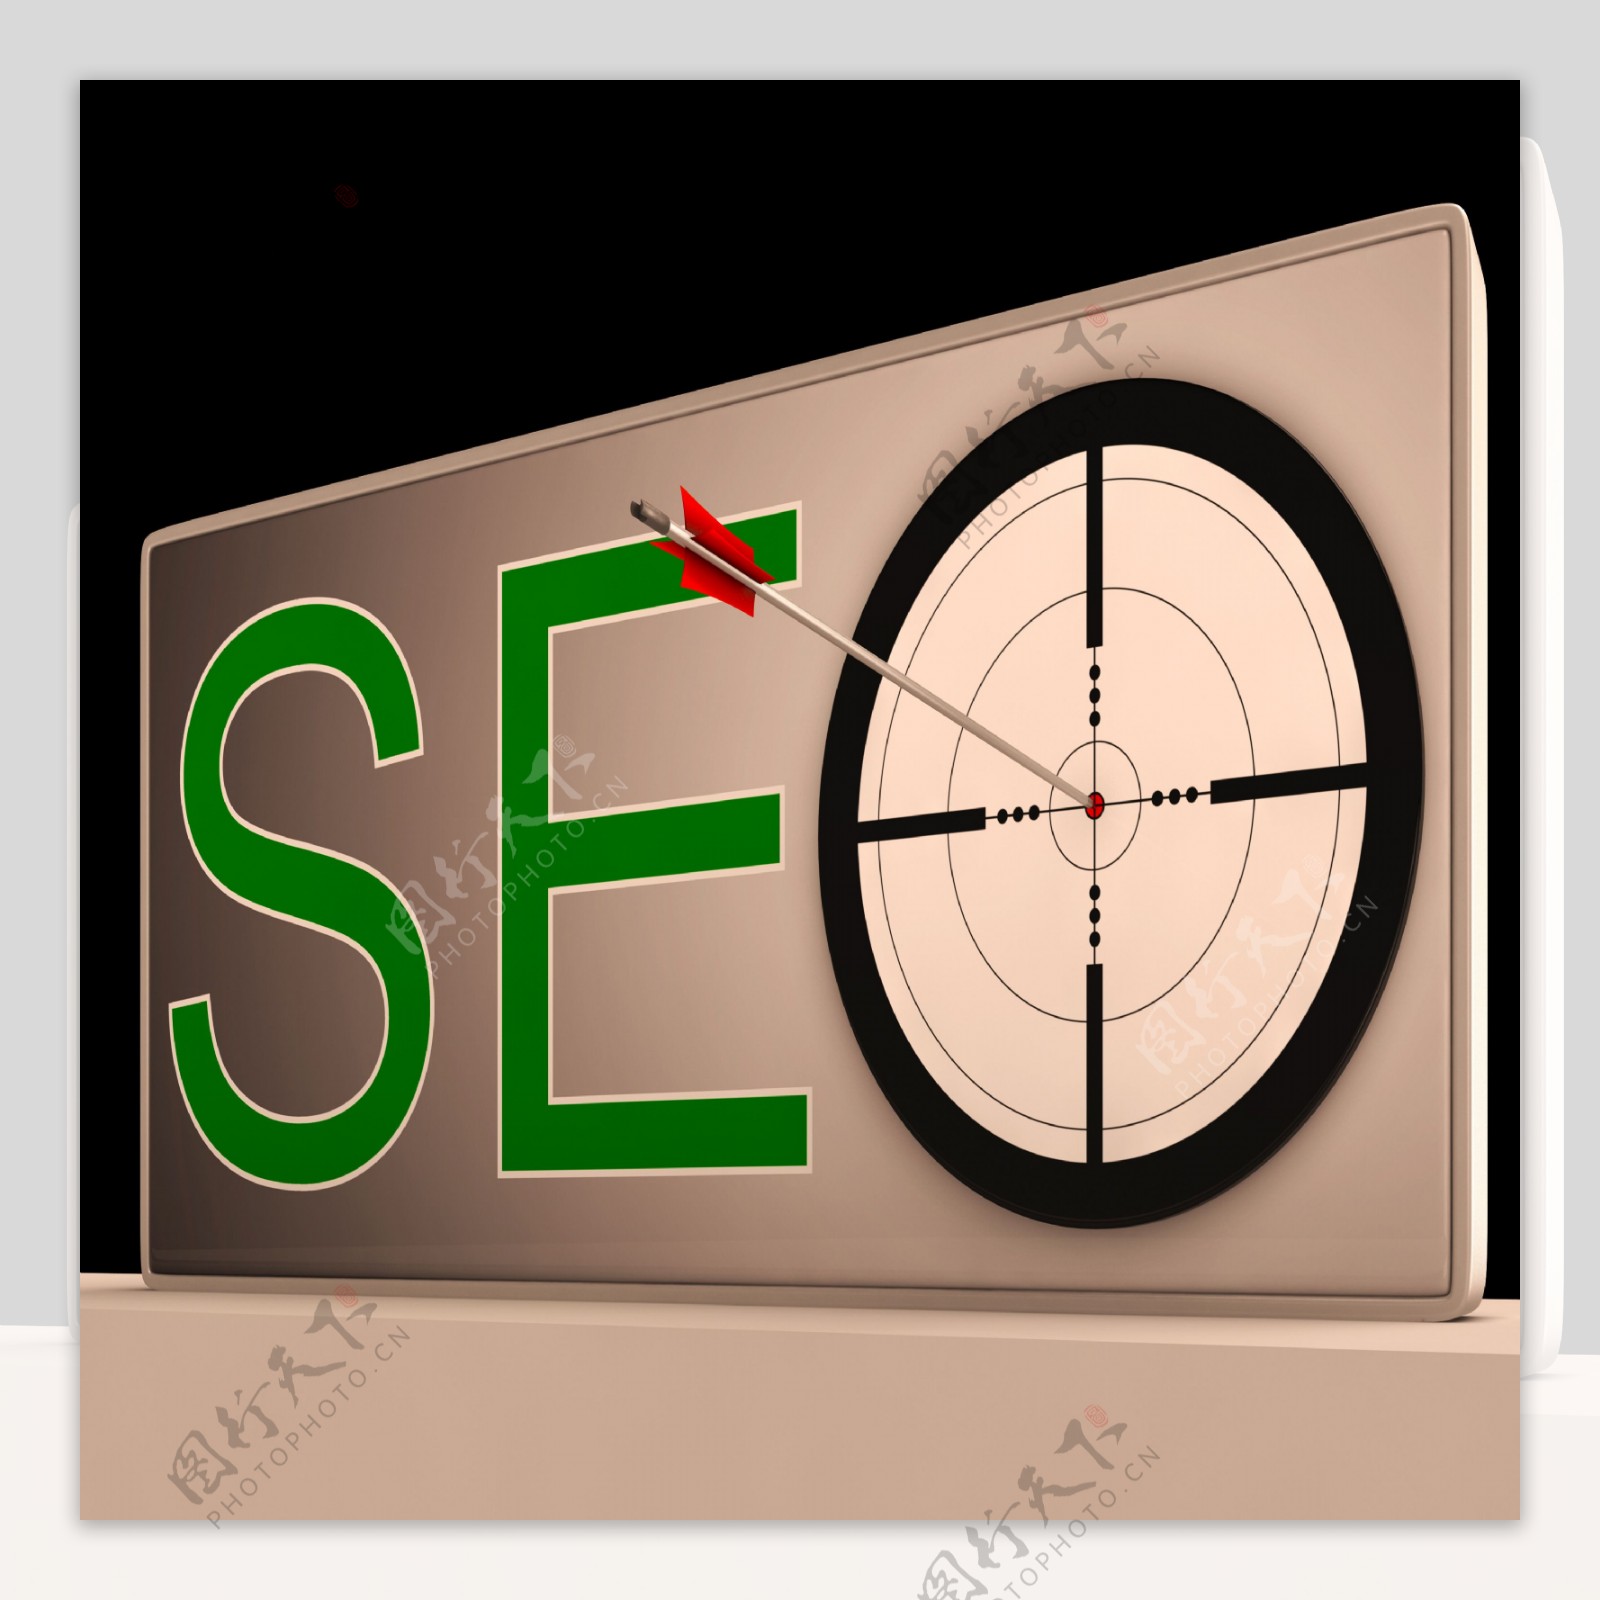 SEO的目标意味着搜索引擎优化和推广